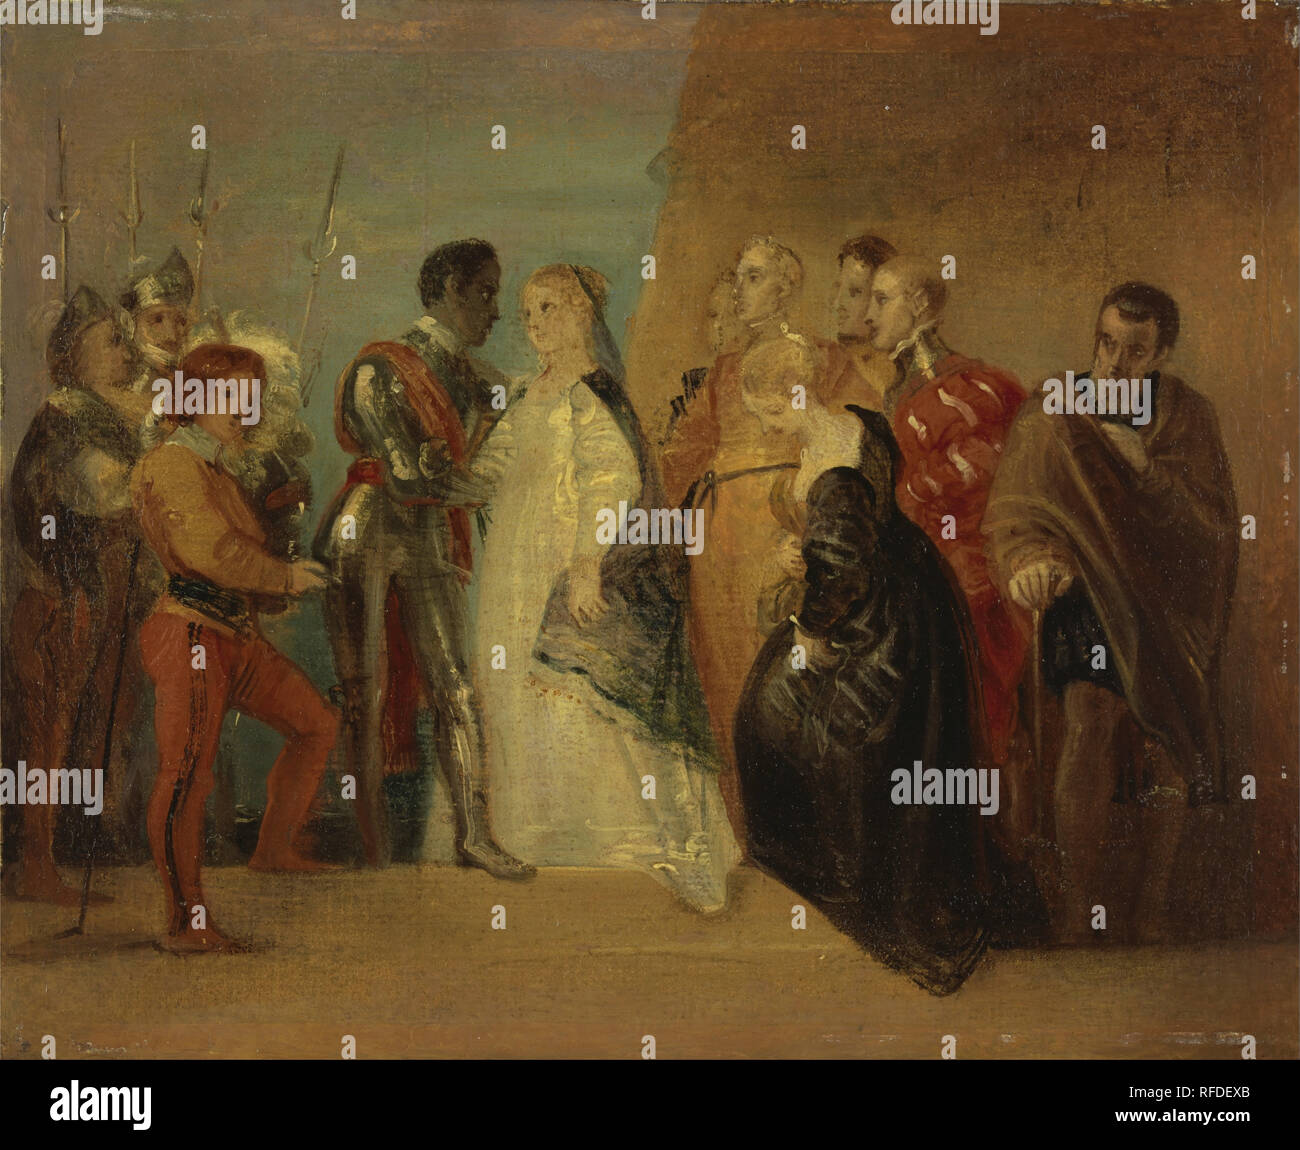 Le retour d'Othello, à partir de 'Othello', Acte II, scène ii. Date/Période : Ca. 1799. La peinture. Huile sur papier monté sur toile. Hauteur : 210 mm (8.26 in) ; Largeur : 254 mm (10 in). Auteur : THOMAS STOTHARD. Banque D'Images